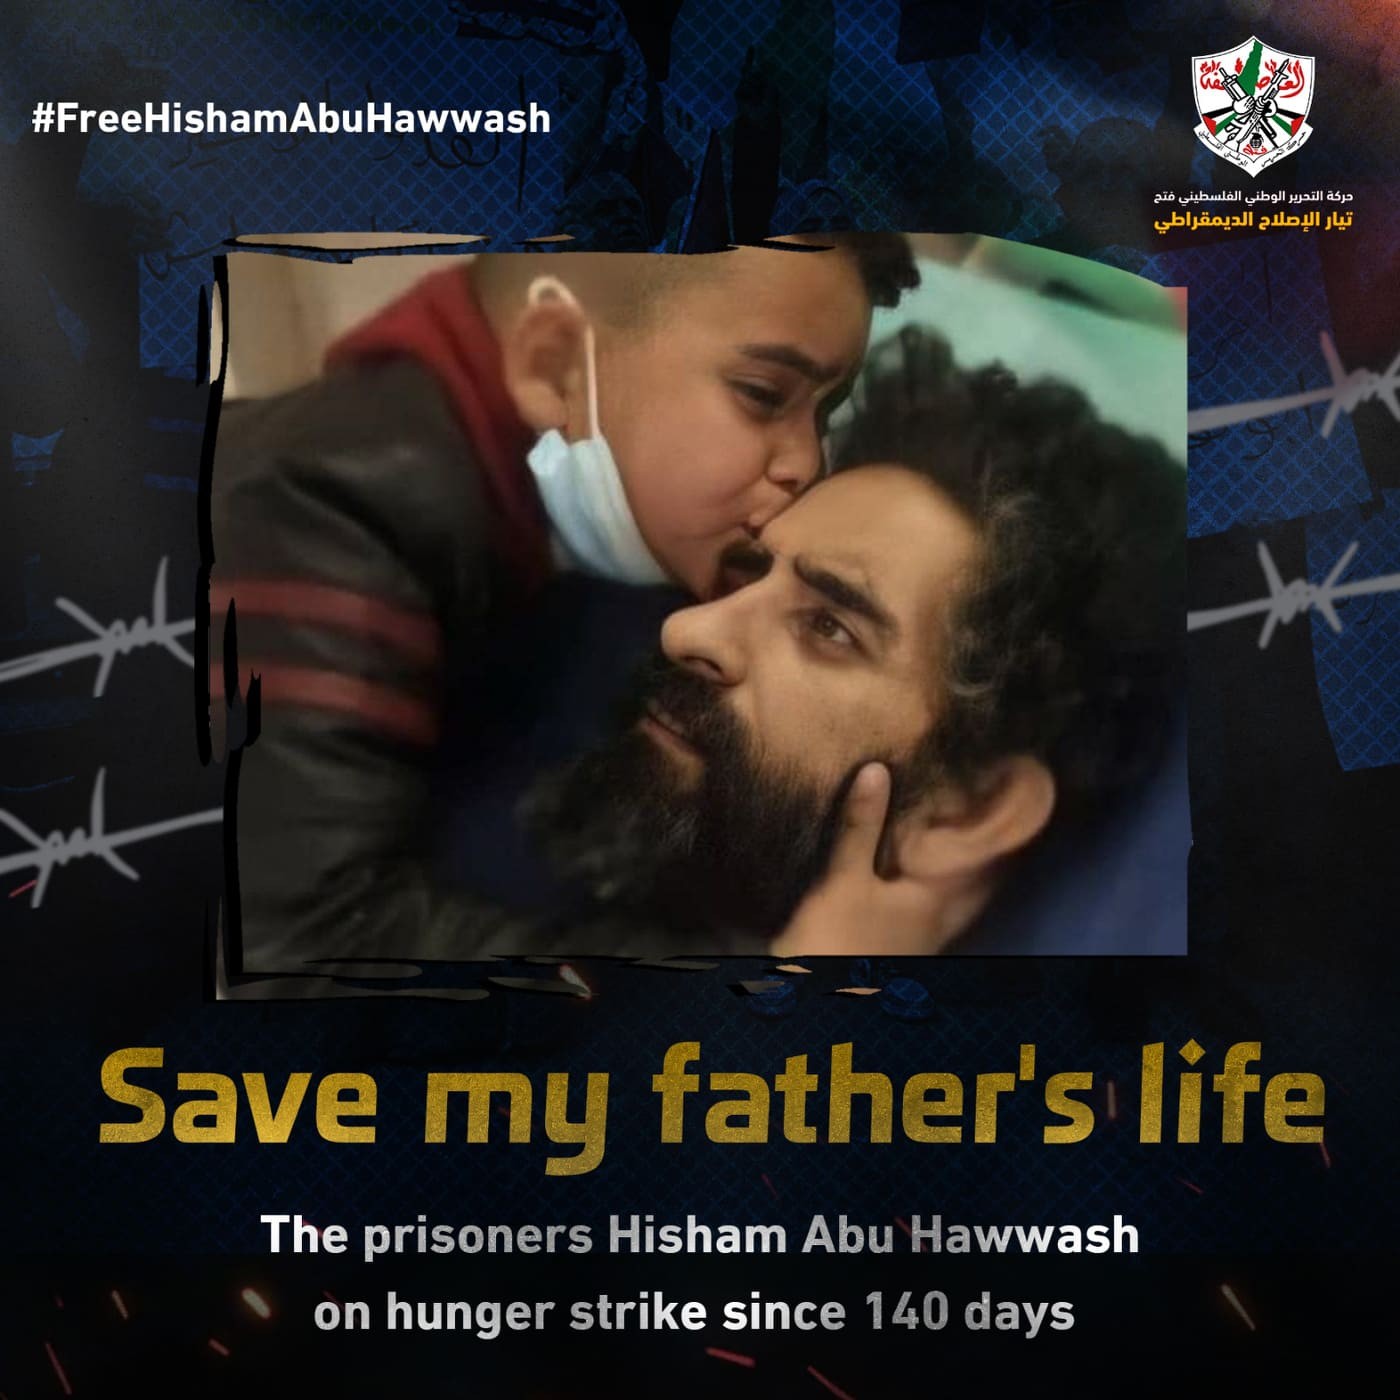 مفوضية الإعلام تُطلق حملة إلكترونية للتضامن مع الأسير هشام أبو هواش